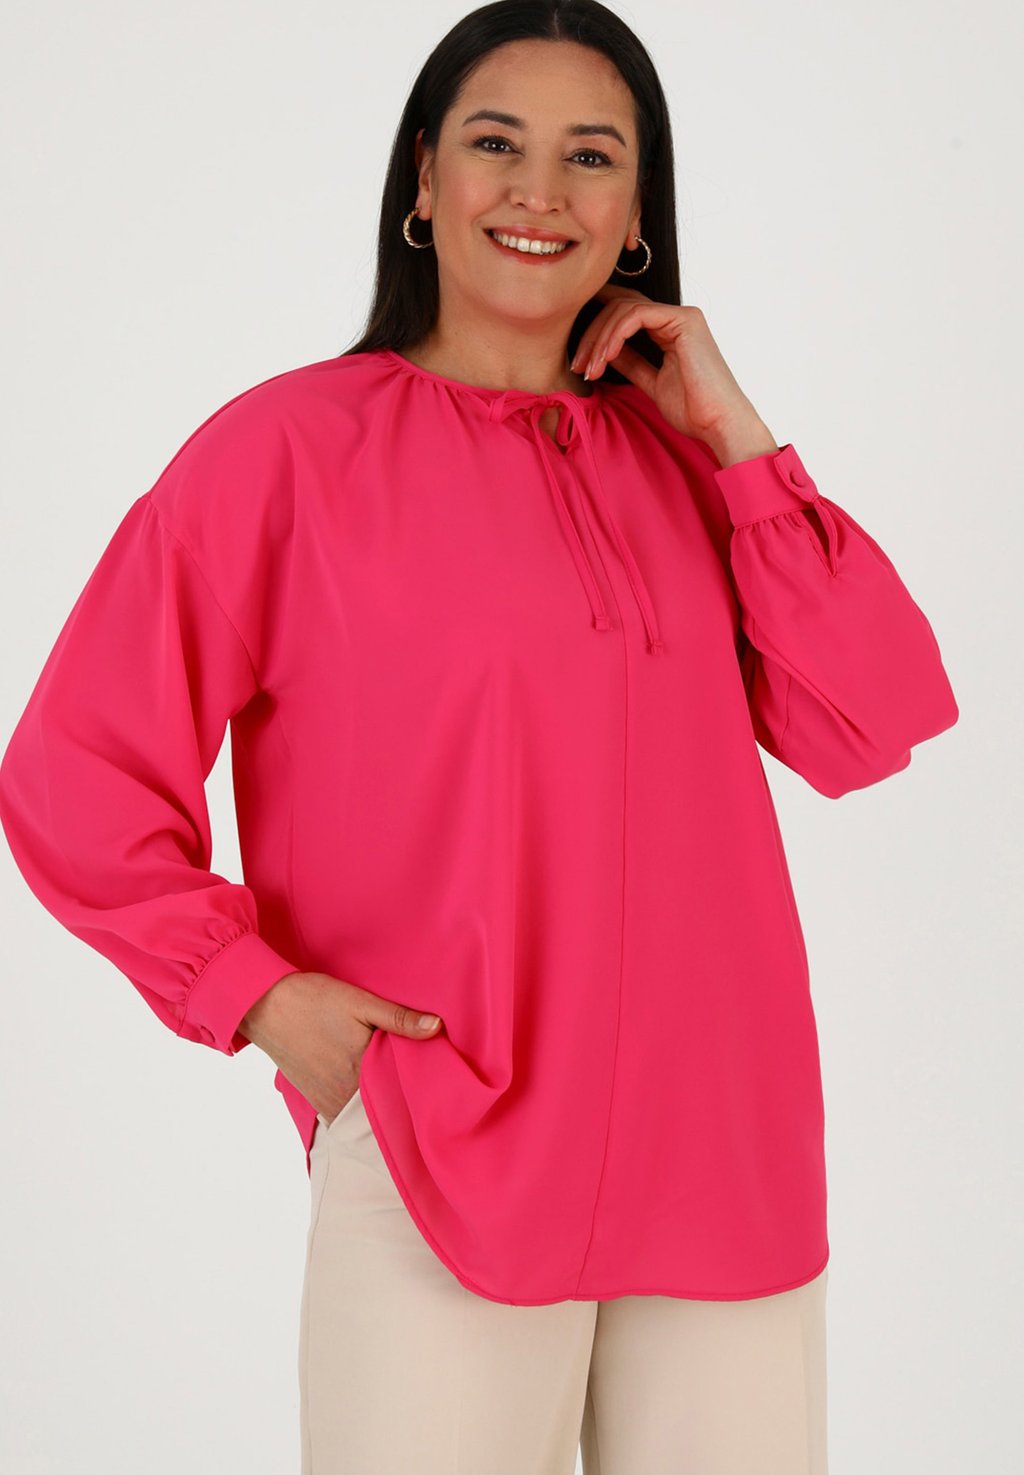 Блузка CREW NECK PLUS SIZE ALIA Modanisa, розовый блузка crew neck plus size alia modanisa розовый